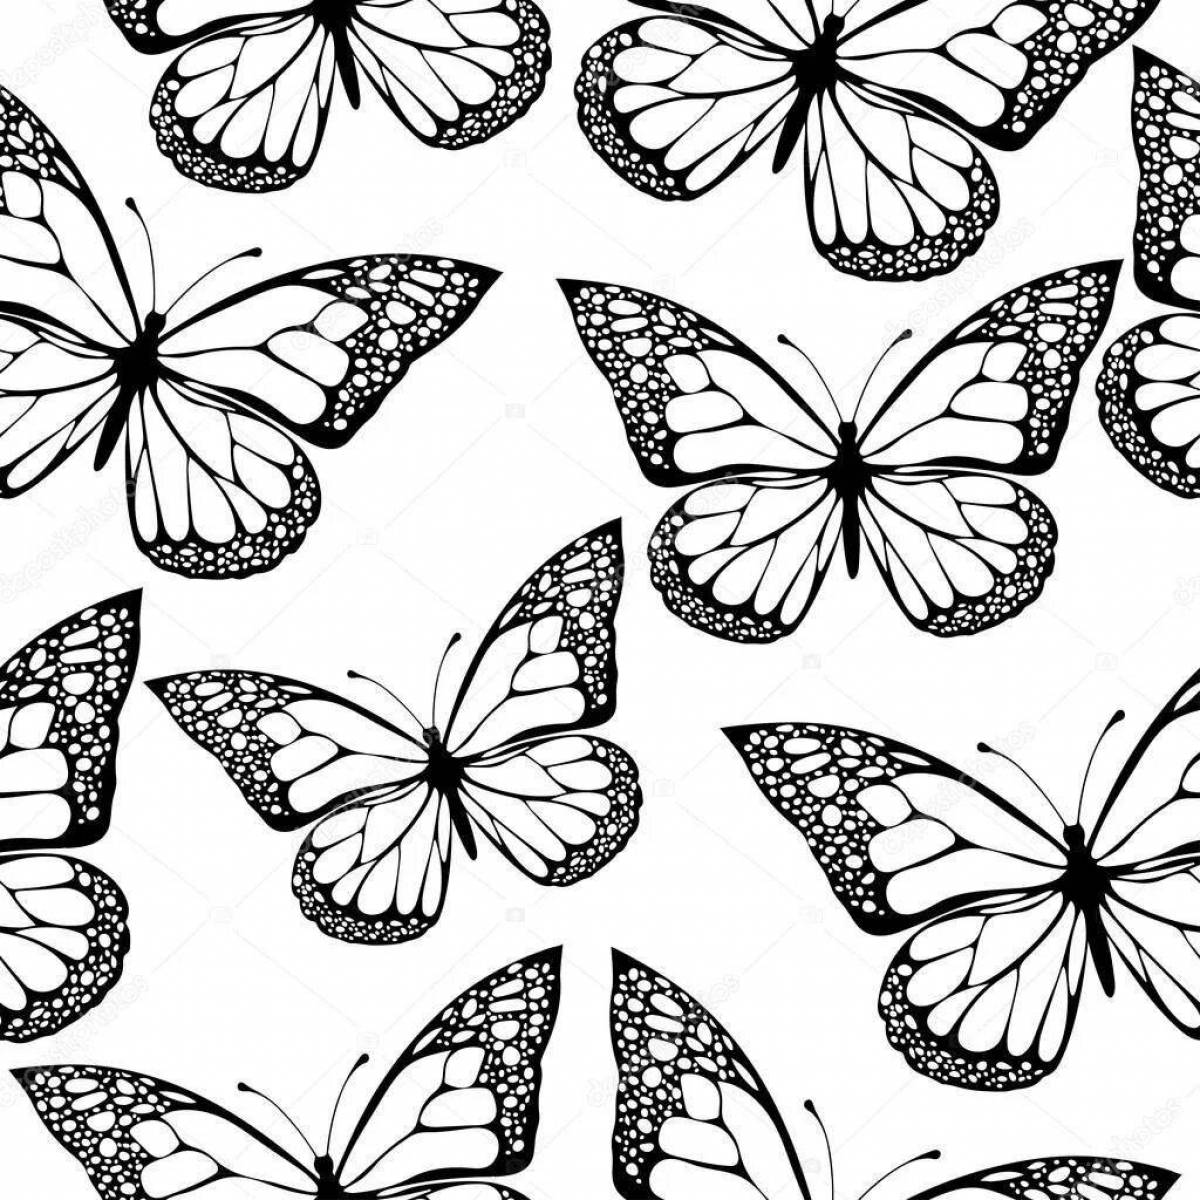 Раскраска буйные черно-белые бабочки